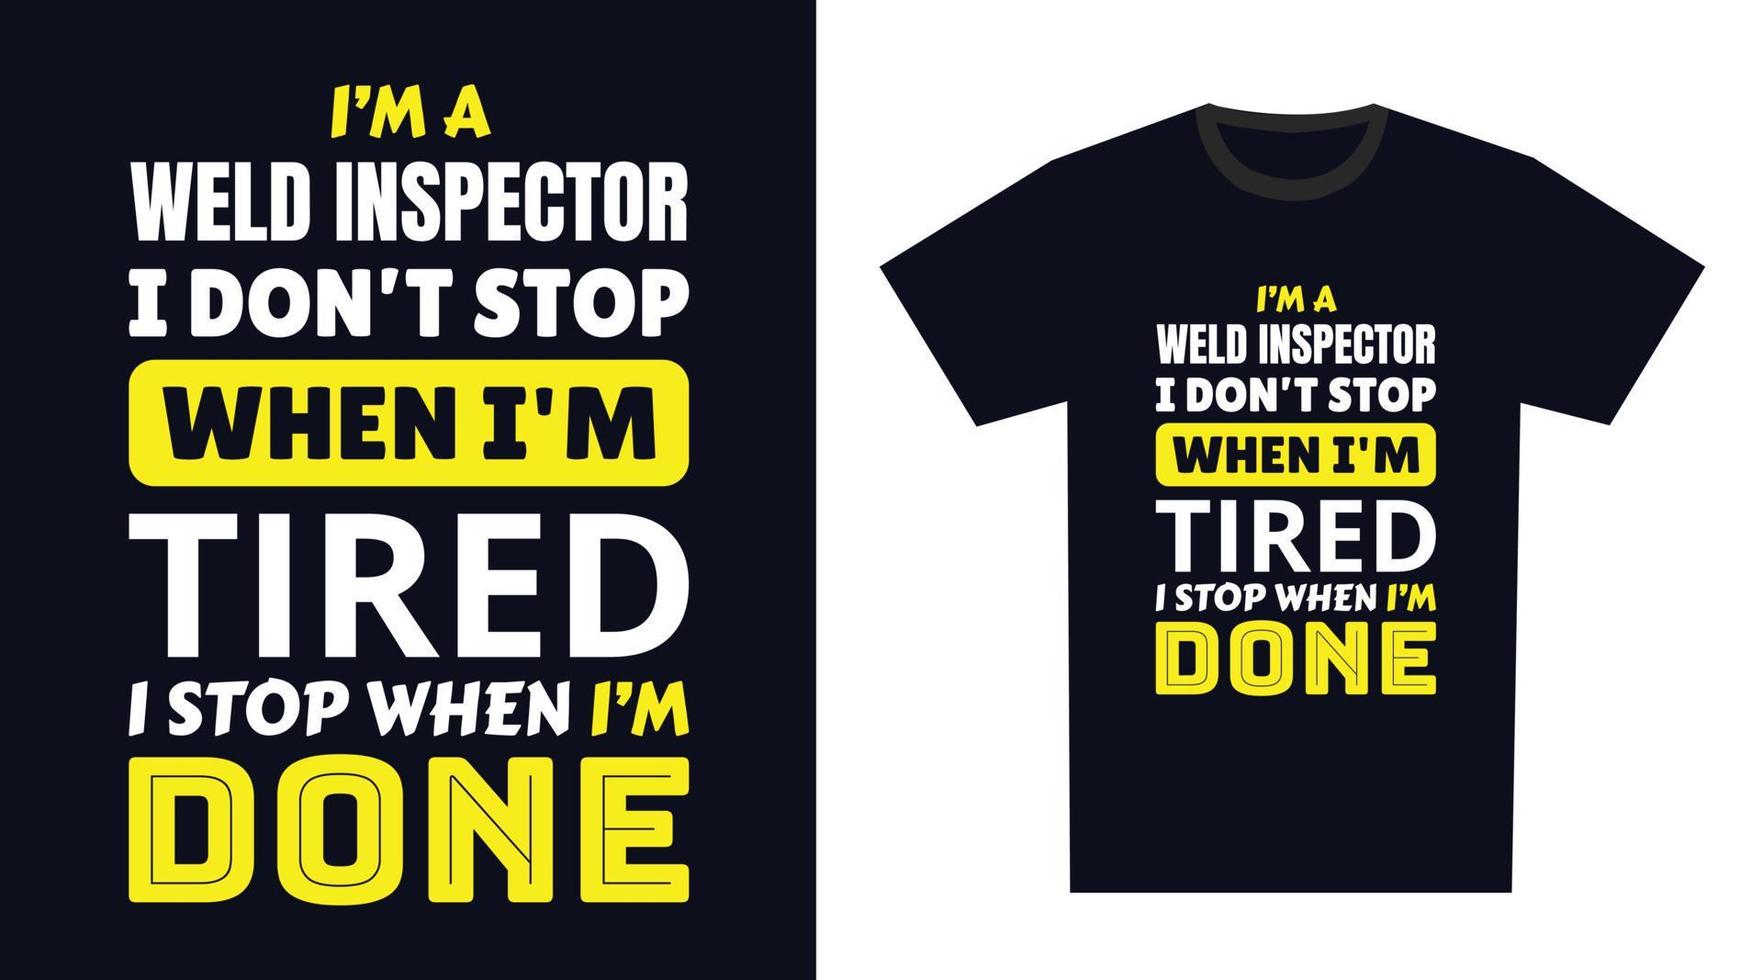 svetsa inspektör t skjorta design. jag 'm en svetsa inspektör jag inte sluta när jag är trött, jag sluta när jag är Gjort vektor